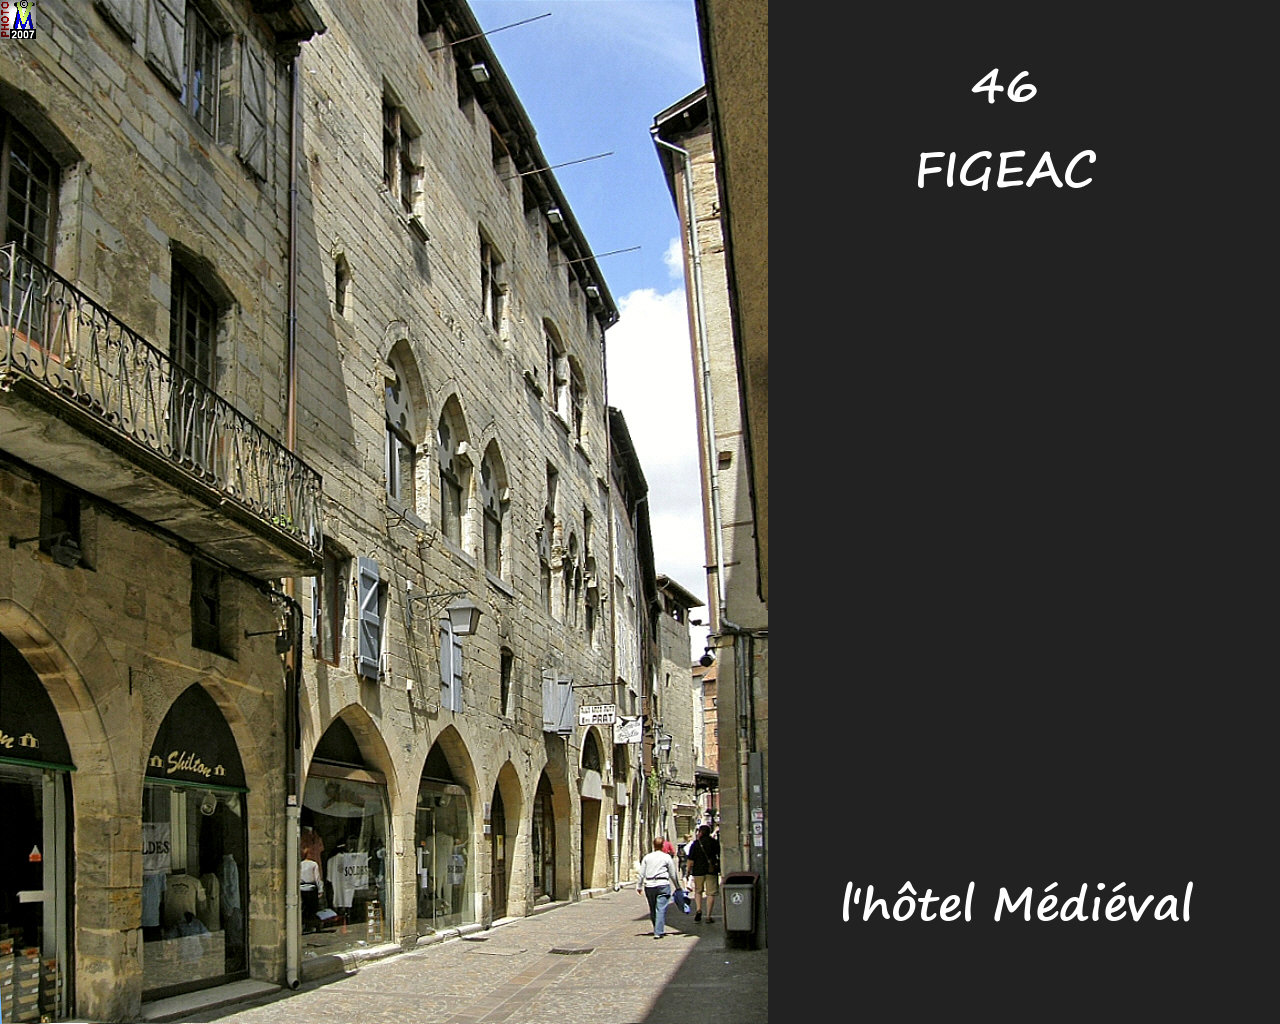 46FIGEAC_H-Medieval_100.jpg